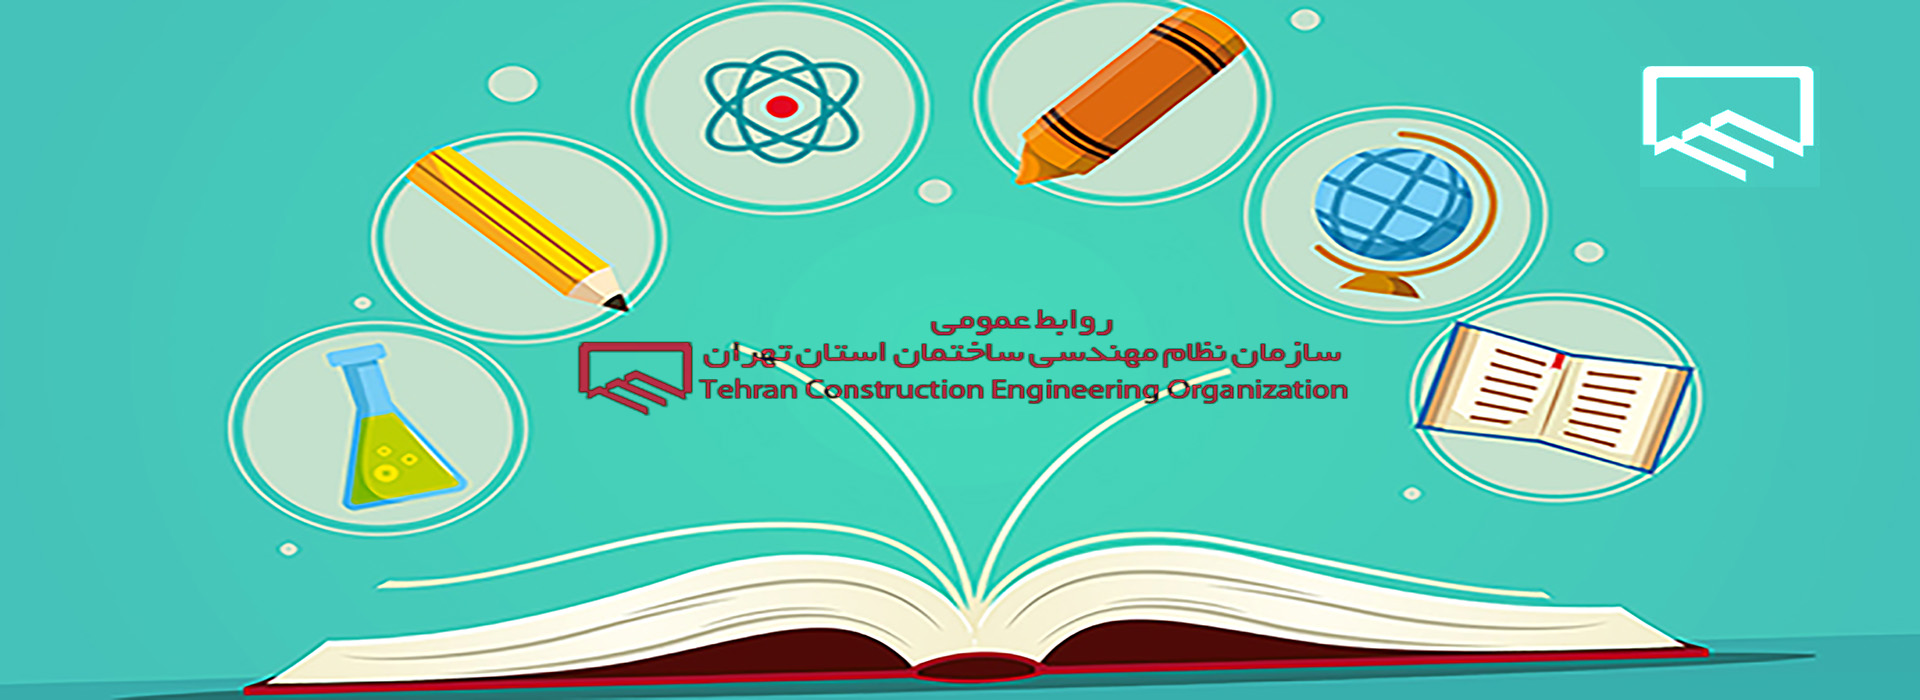 شروع برگزاری دوره های آموزشی تمدید و ارتقا نظام مهندسی تهران